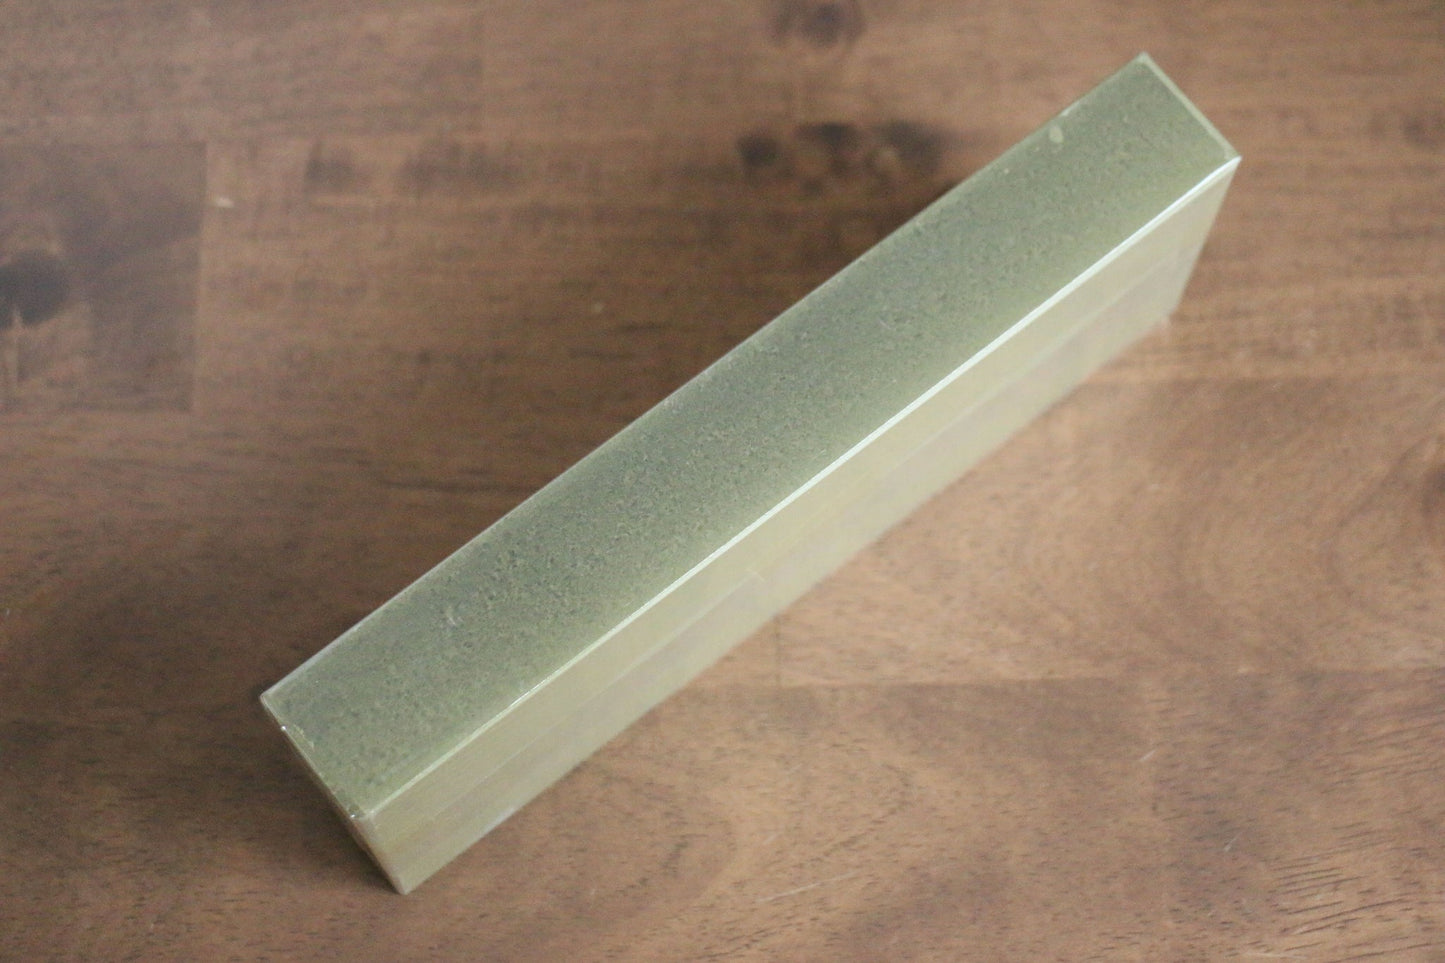 Feiner Schleifstein der Marke Jikko Ceramic mit Körnung Nr. 3000 – Specialized Messer-Schleifstein, Gewicht 690 Gramm